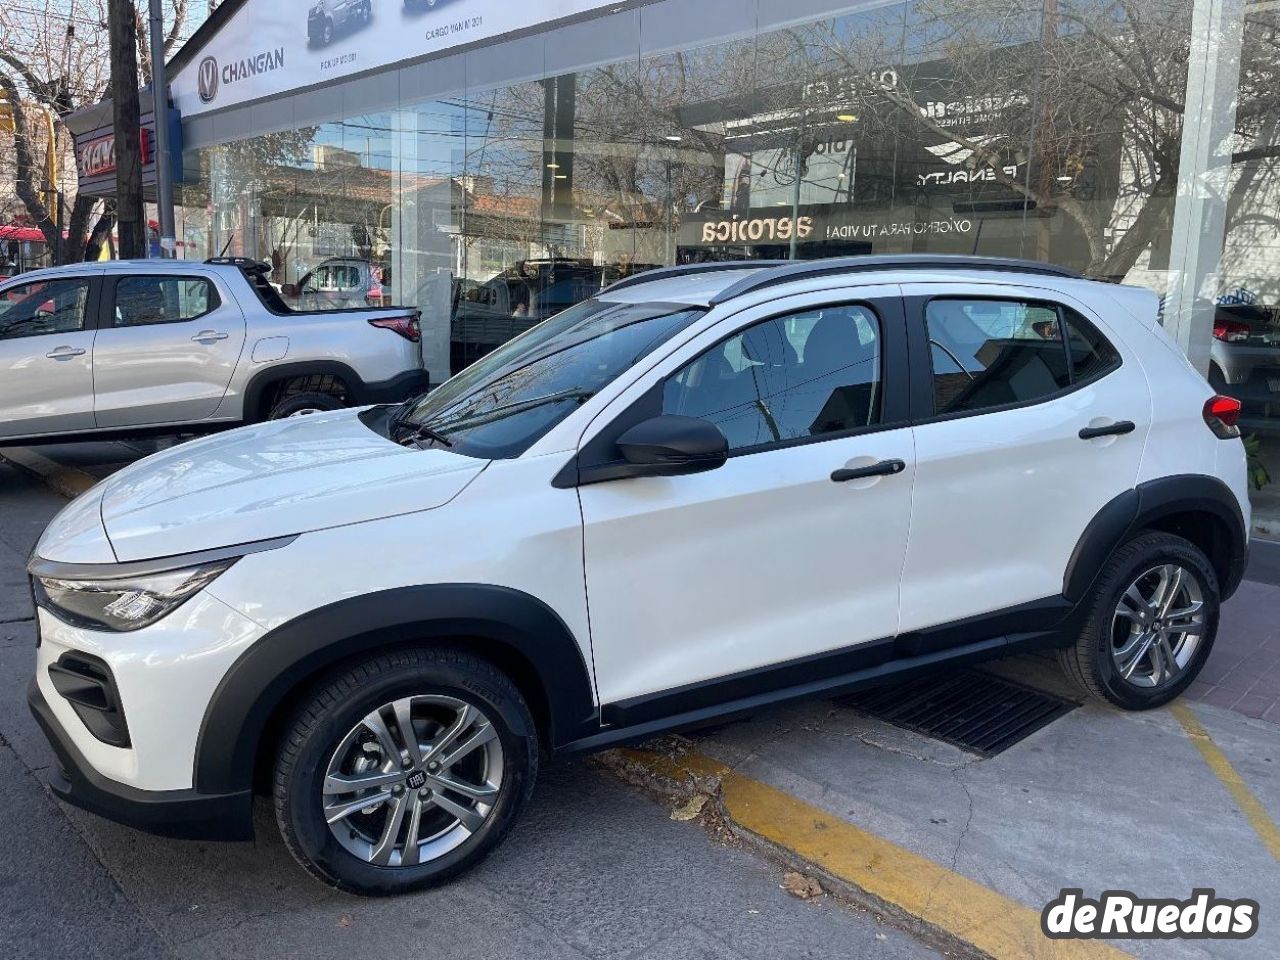 Fiat Pulse Nuevo en Mendoza, deRuedas